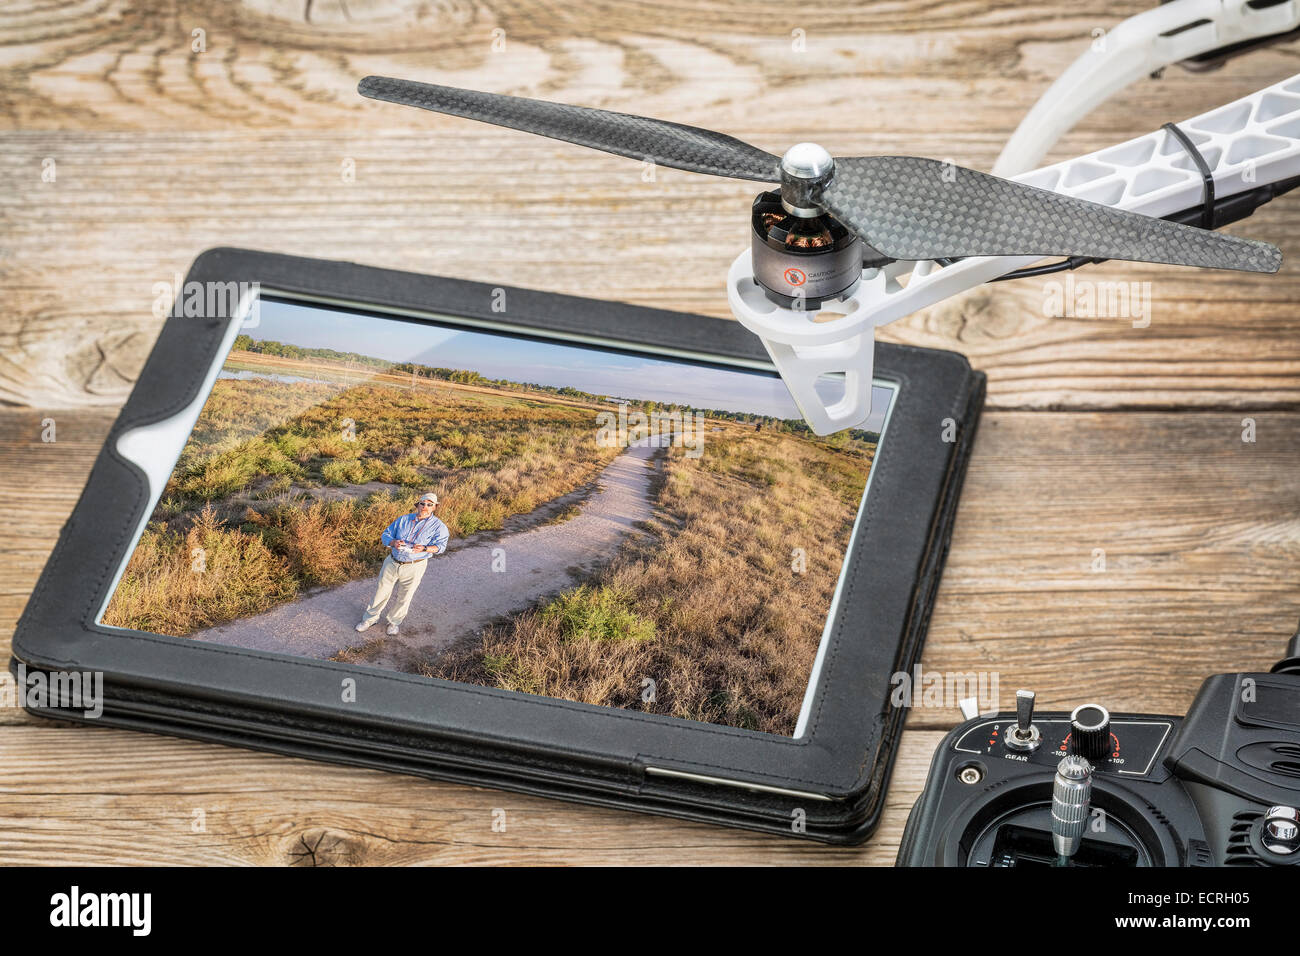 Drone fotografia aerea concetto - revisione di fotografia aerea (Operatore drone in un campo) su una tavoletta digitale Foto Stock